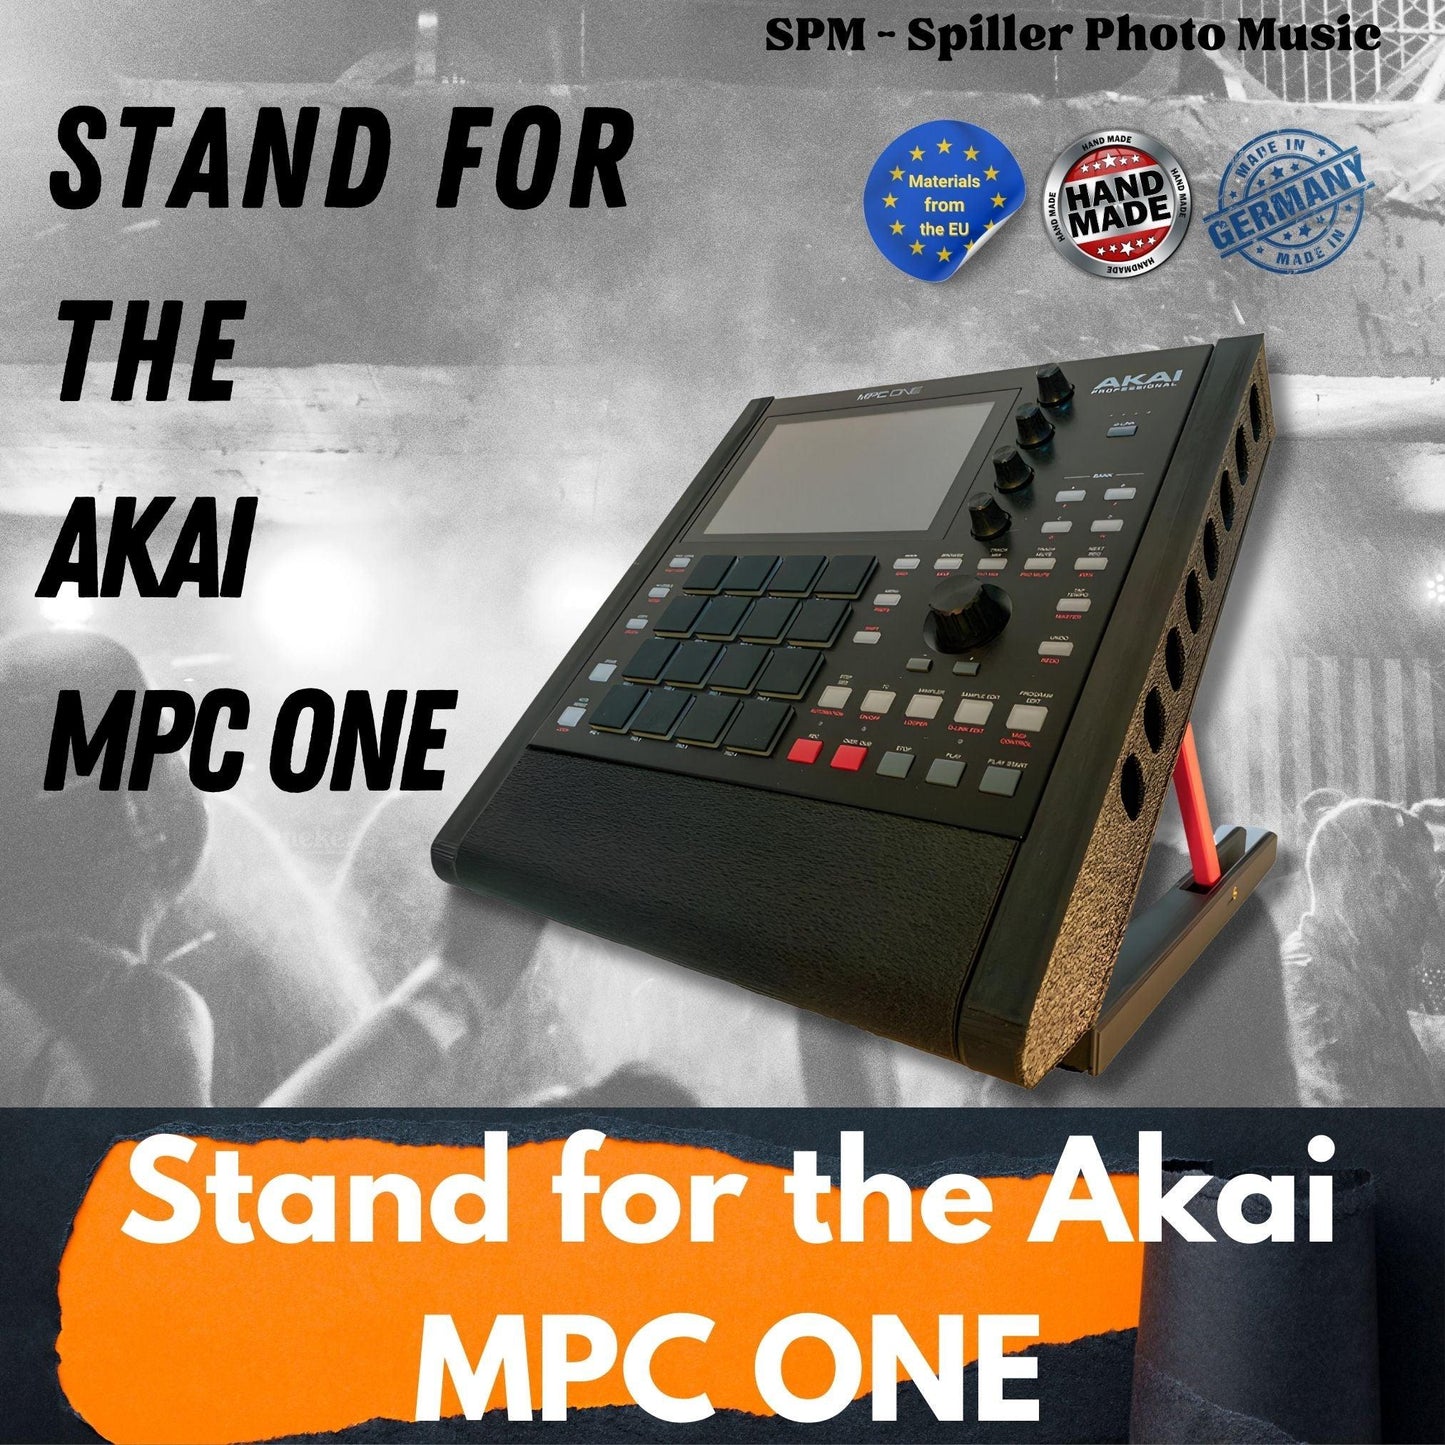 Ultimate Stand - 3D gedruckter Tischständer für die MPC ONE von Akai - SPM - Spillerphoto & Music